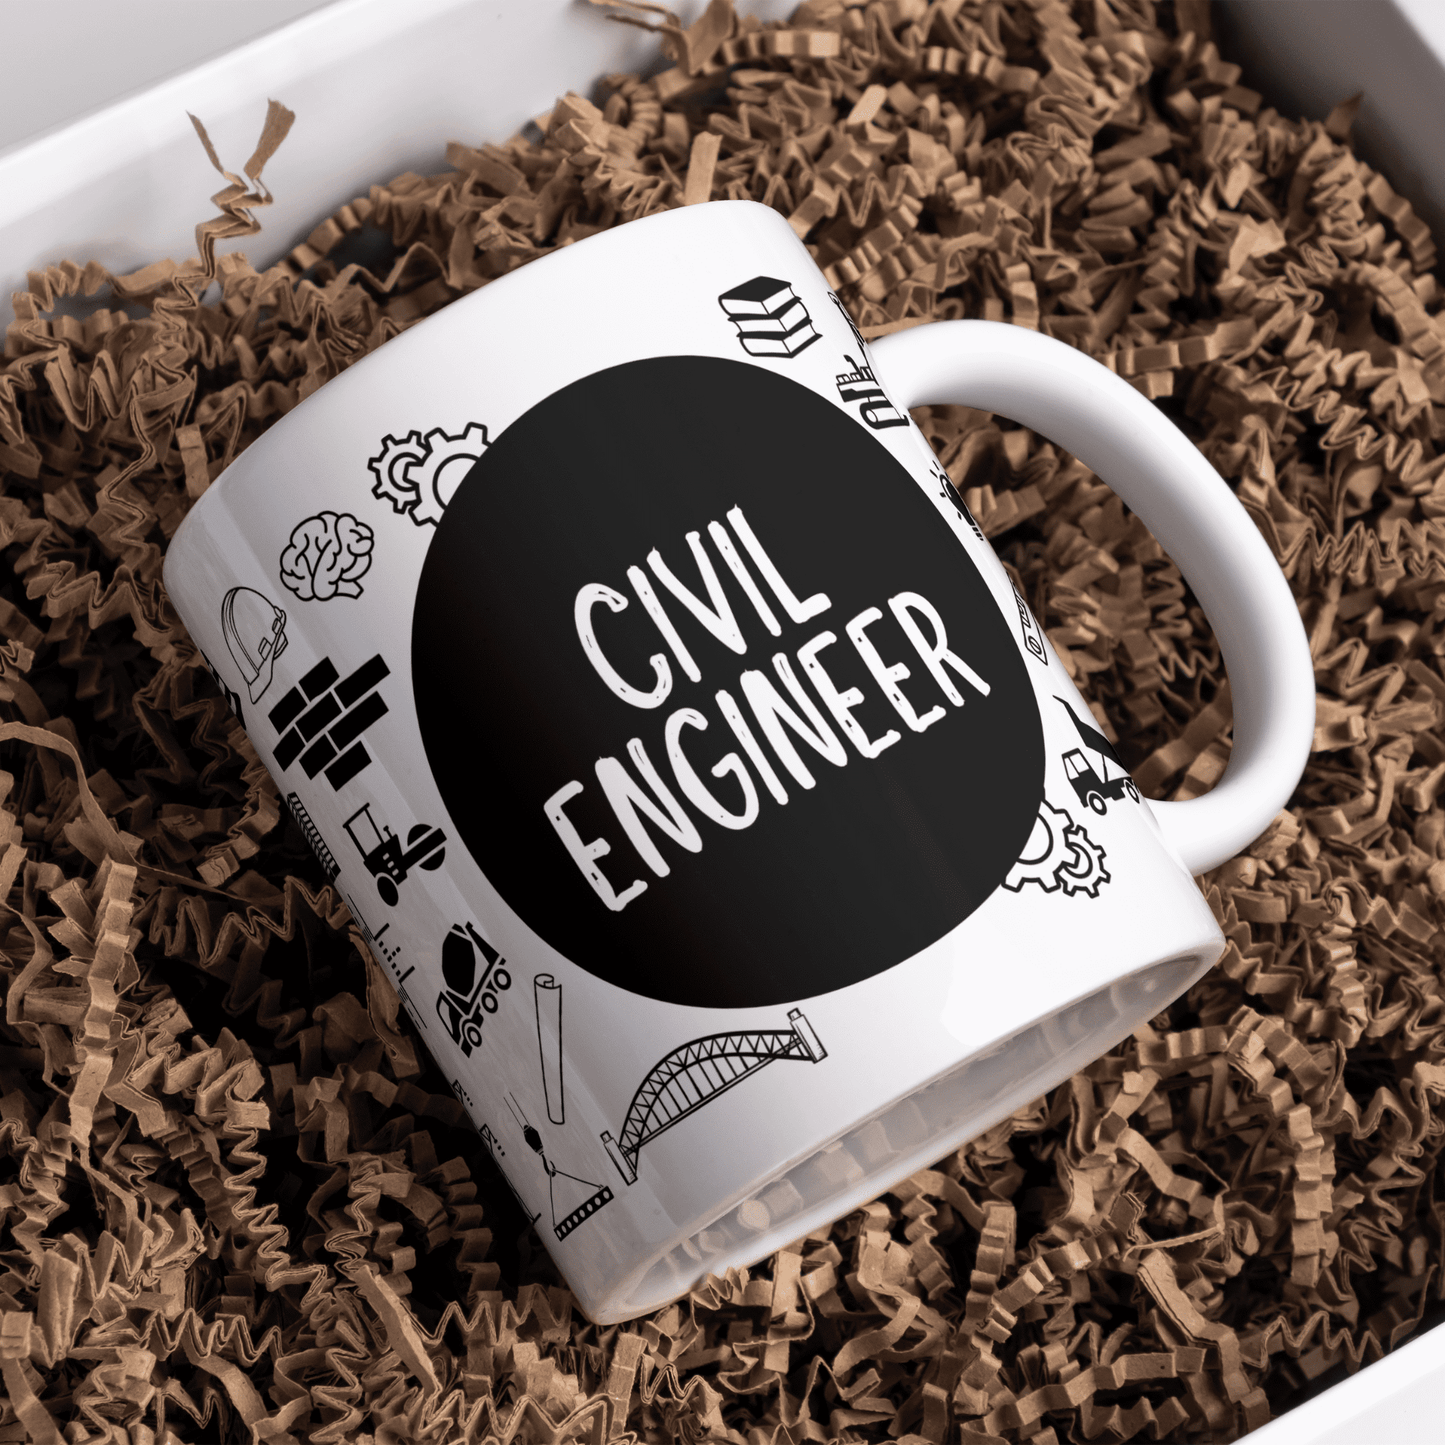 Civil Engineer Mug